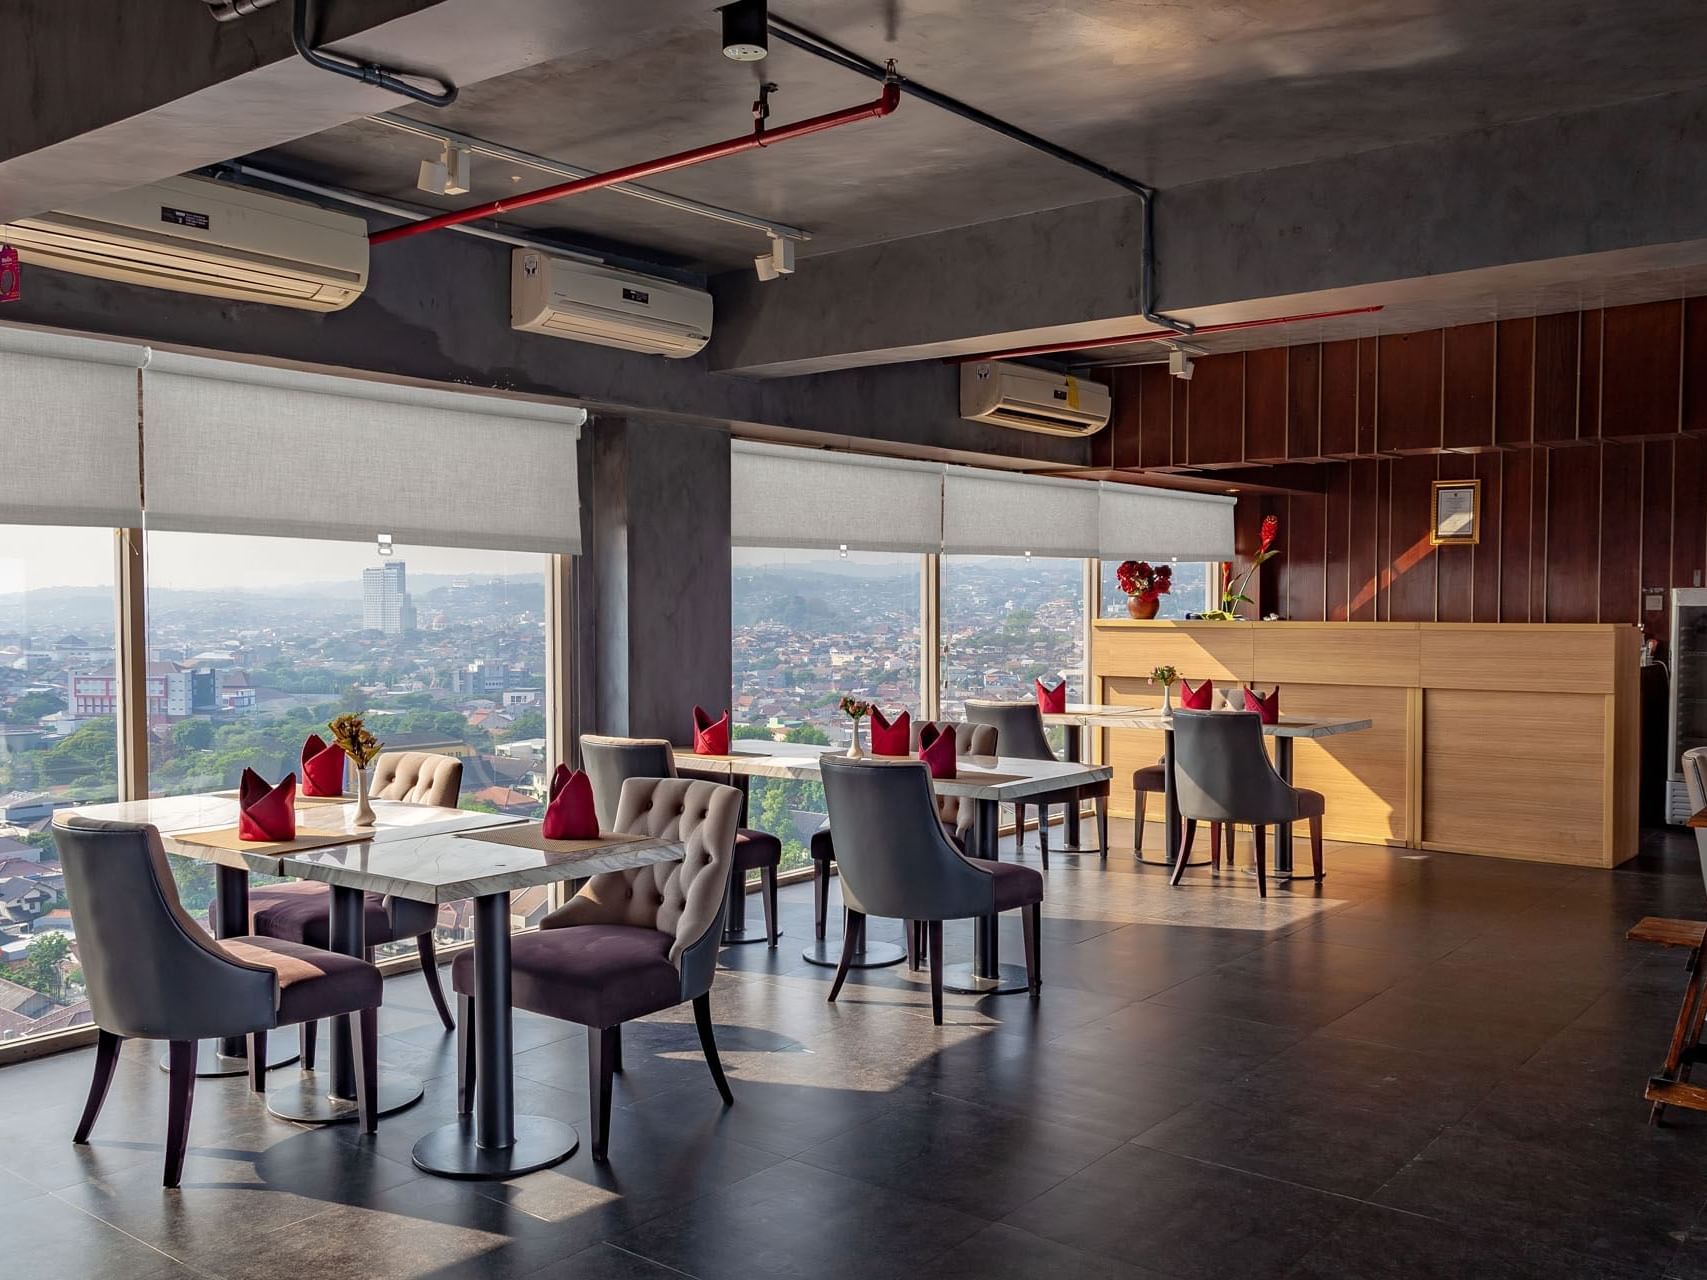 Dining area in Skybar at LK Hotel Simpang Lima